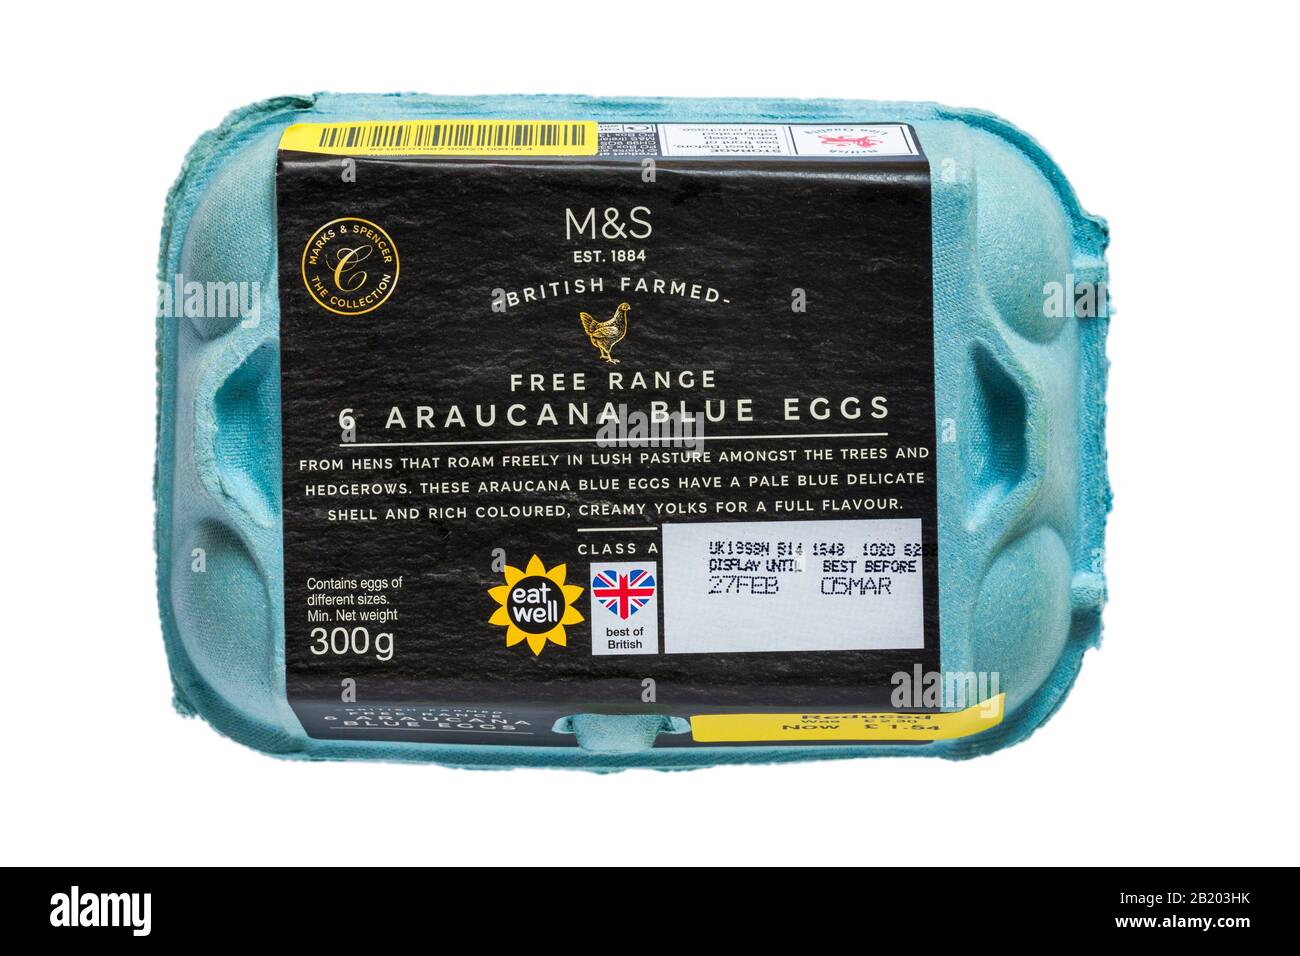 Karton mit M&S Britisch Gezüchtet 6 Freisortiment Araucana Blaue Eier mit blassblauer, zierlicher Schale isoliert auf weißem Grund Eggbox Eikiste geschlossen Stockfoto